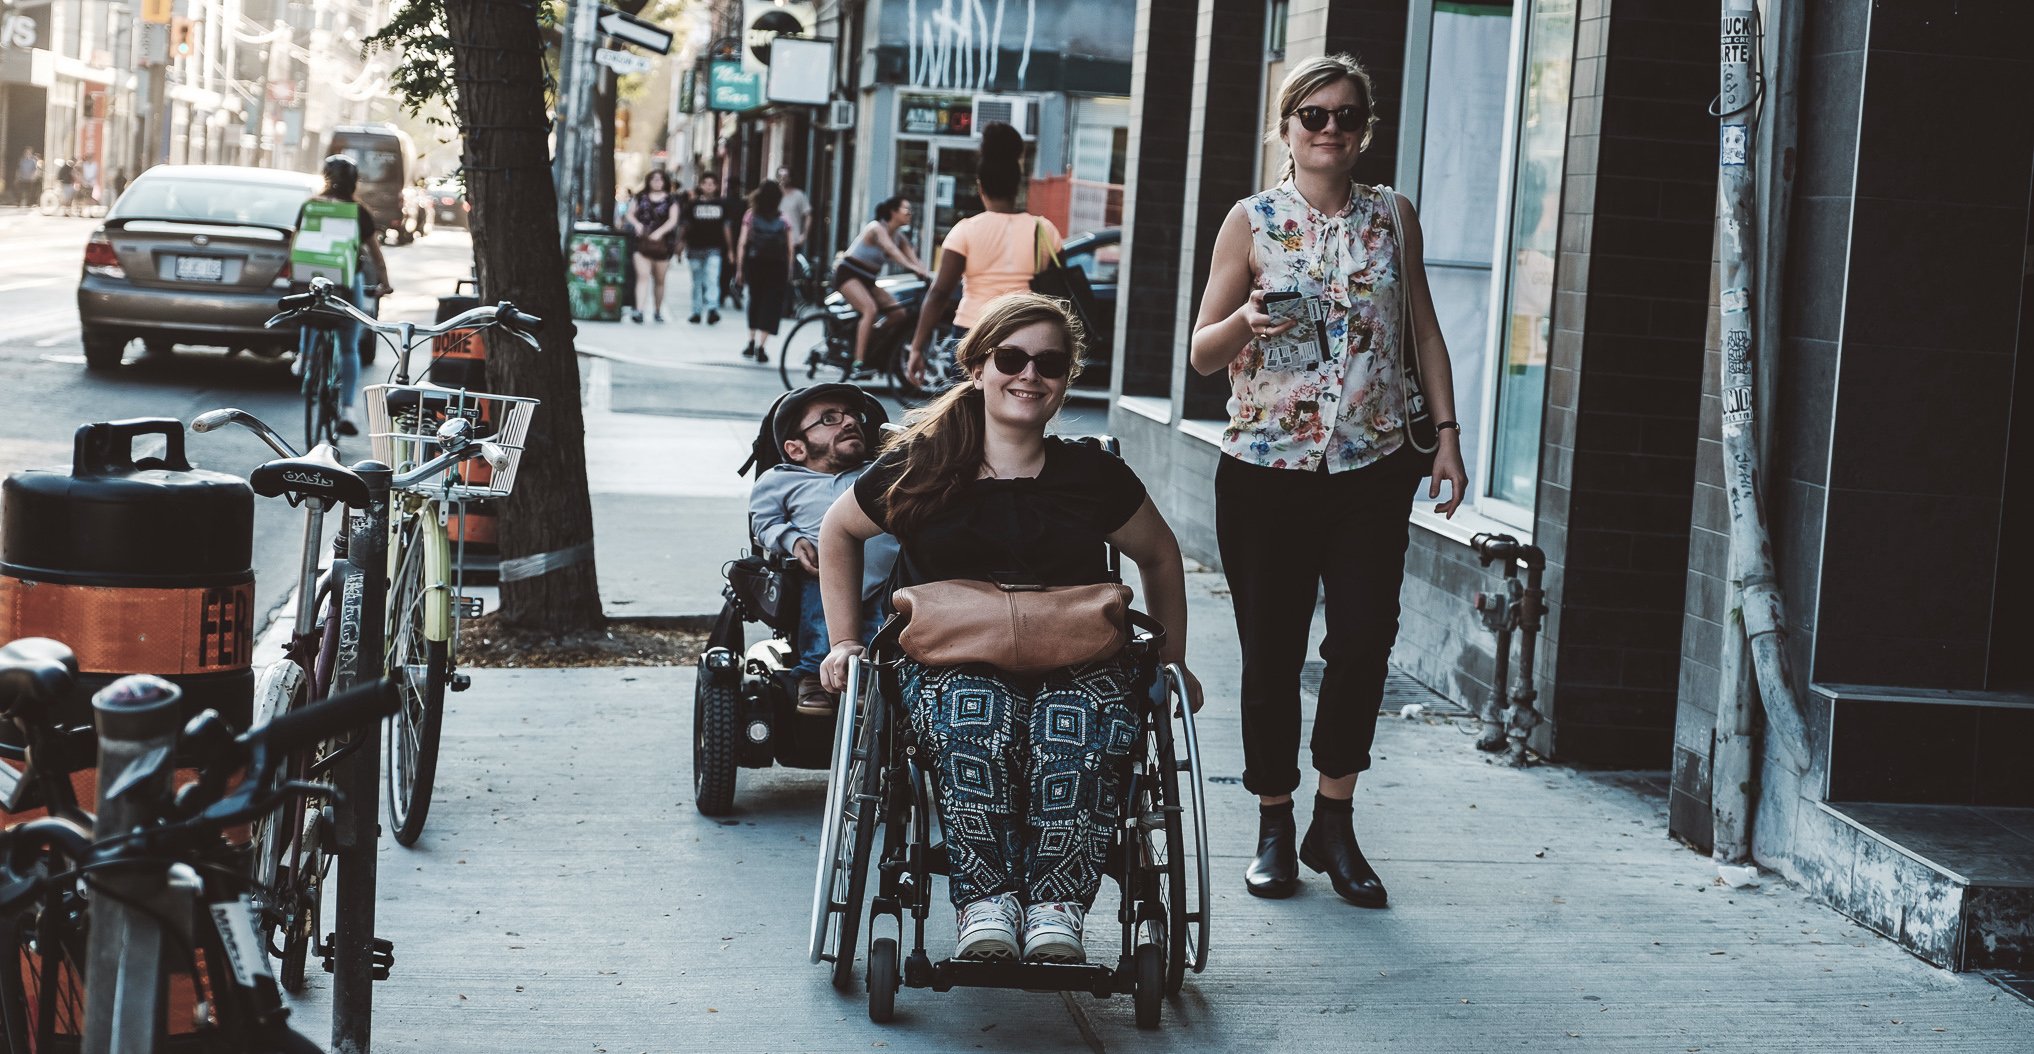 Eine Frau und ein Mann mit Rollstuhl und eine Fußgängerin gehen gemeinsam die Straße entlang